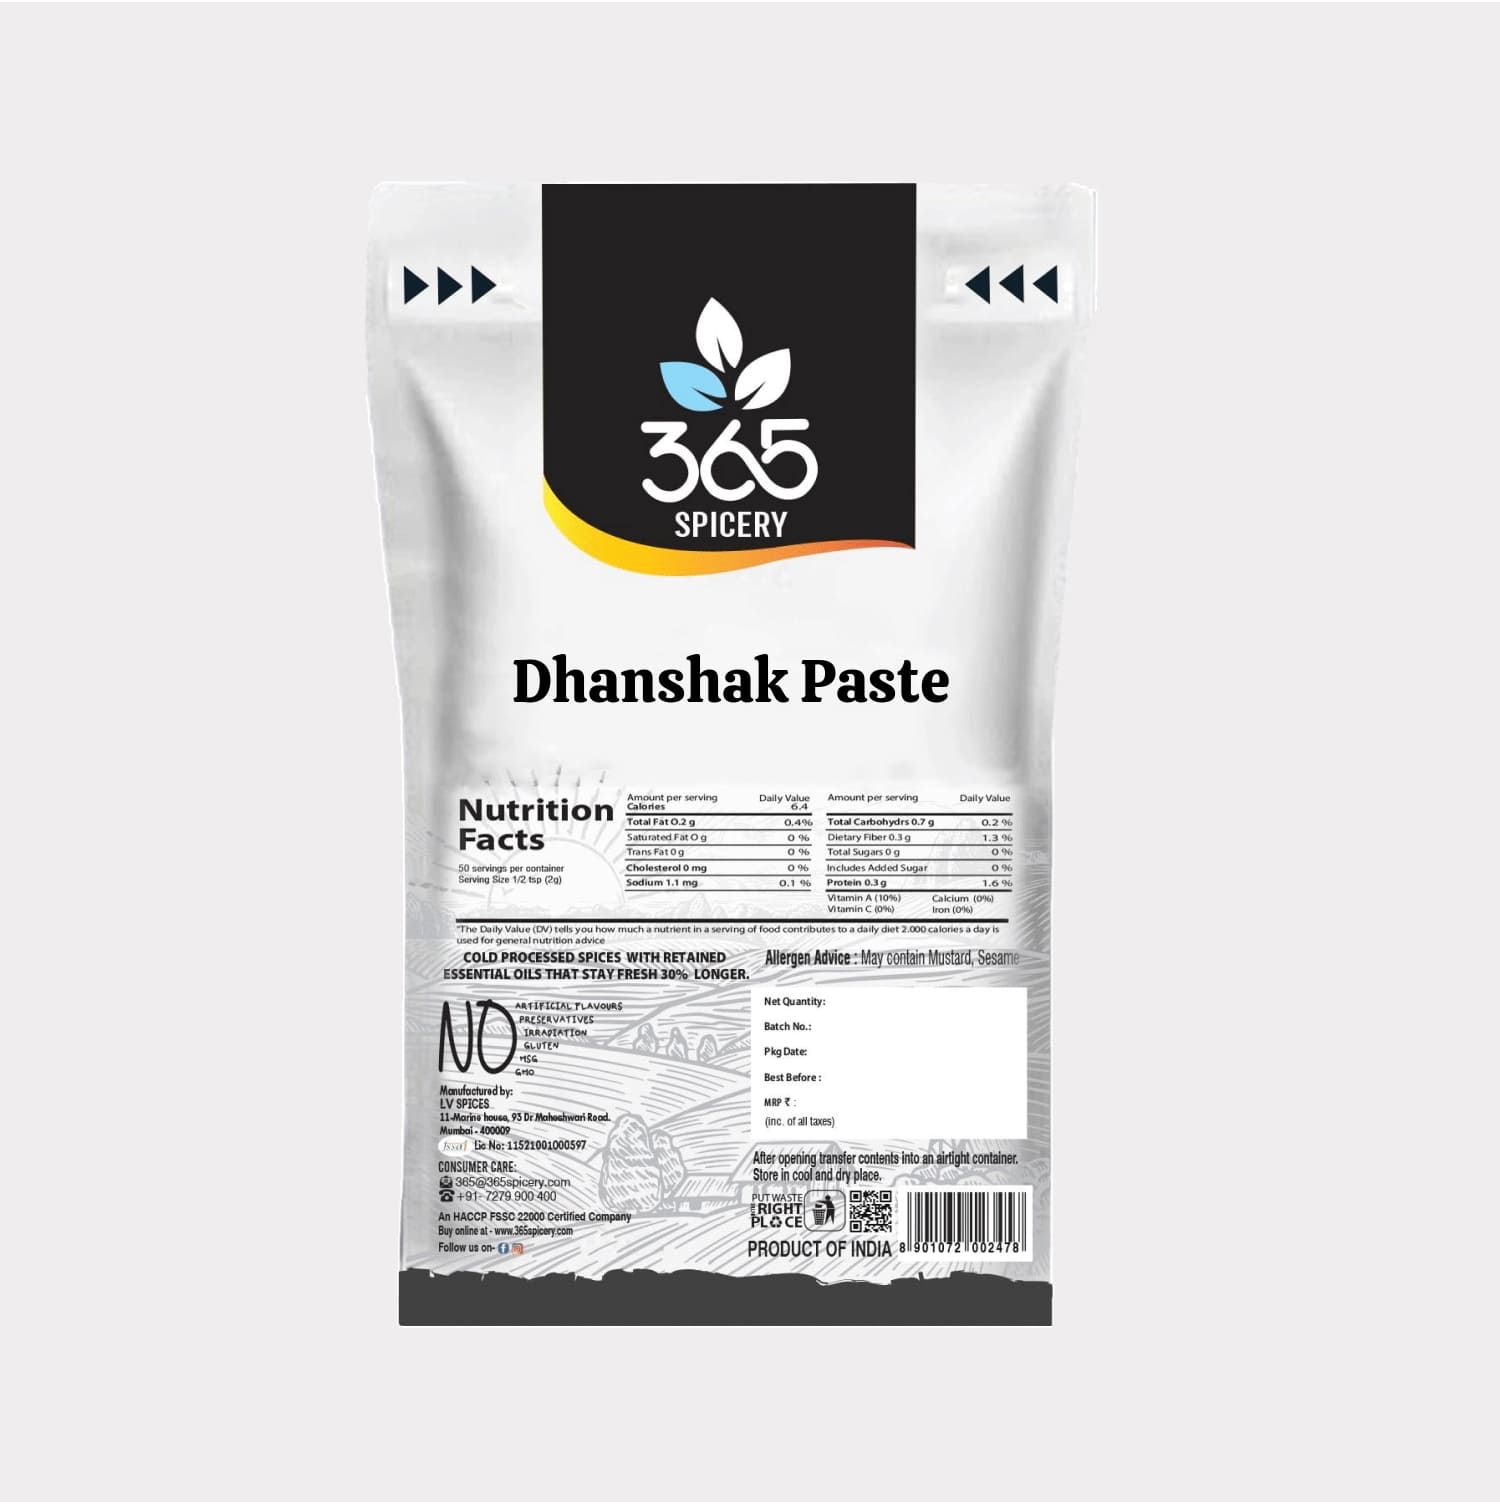 Dhanshak Paste